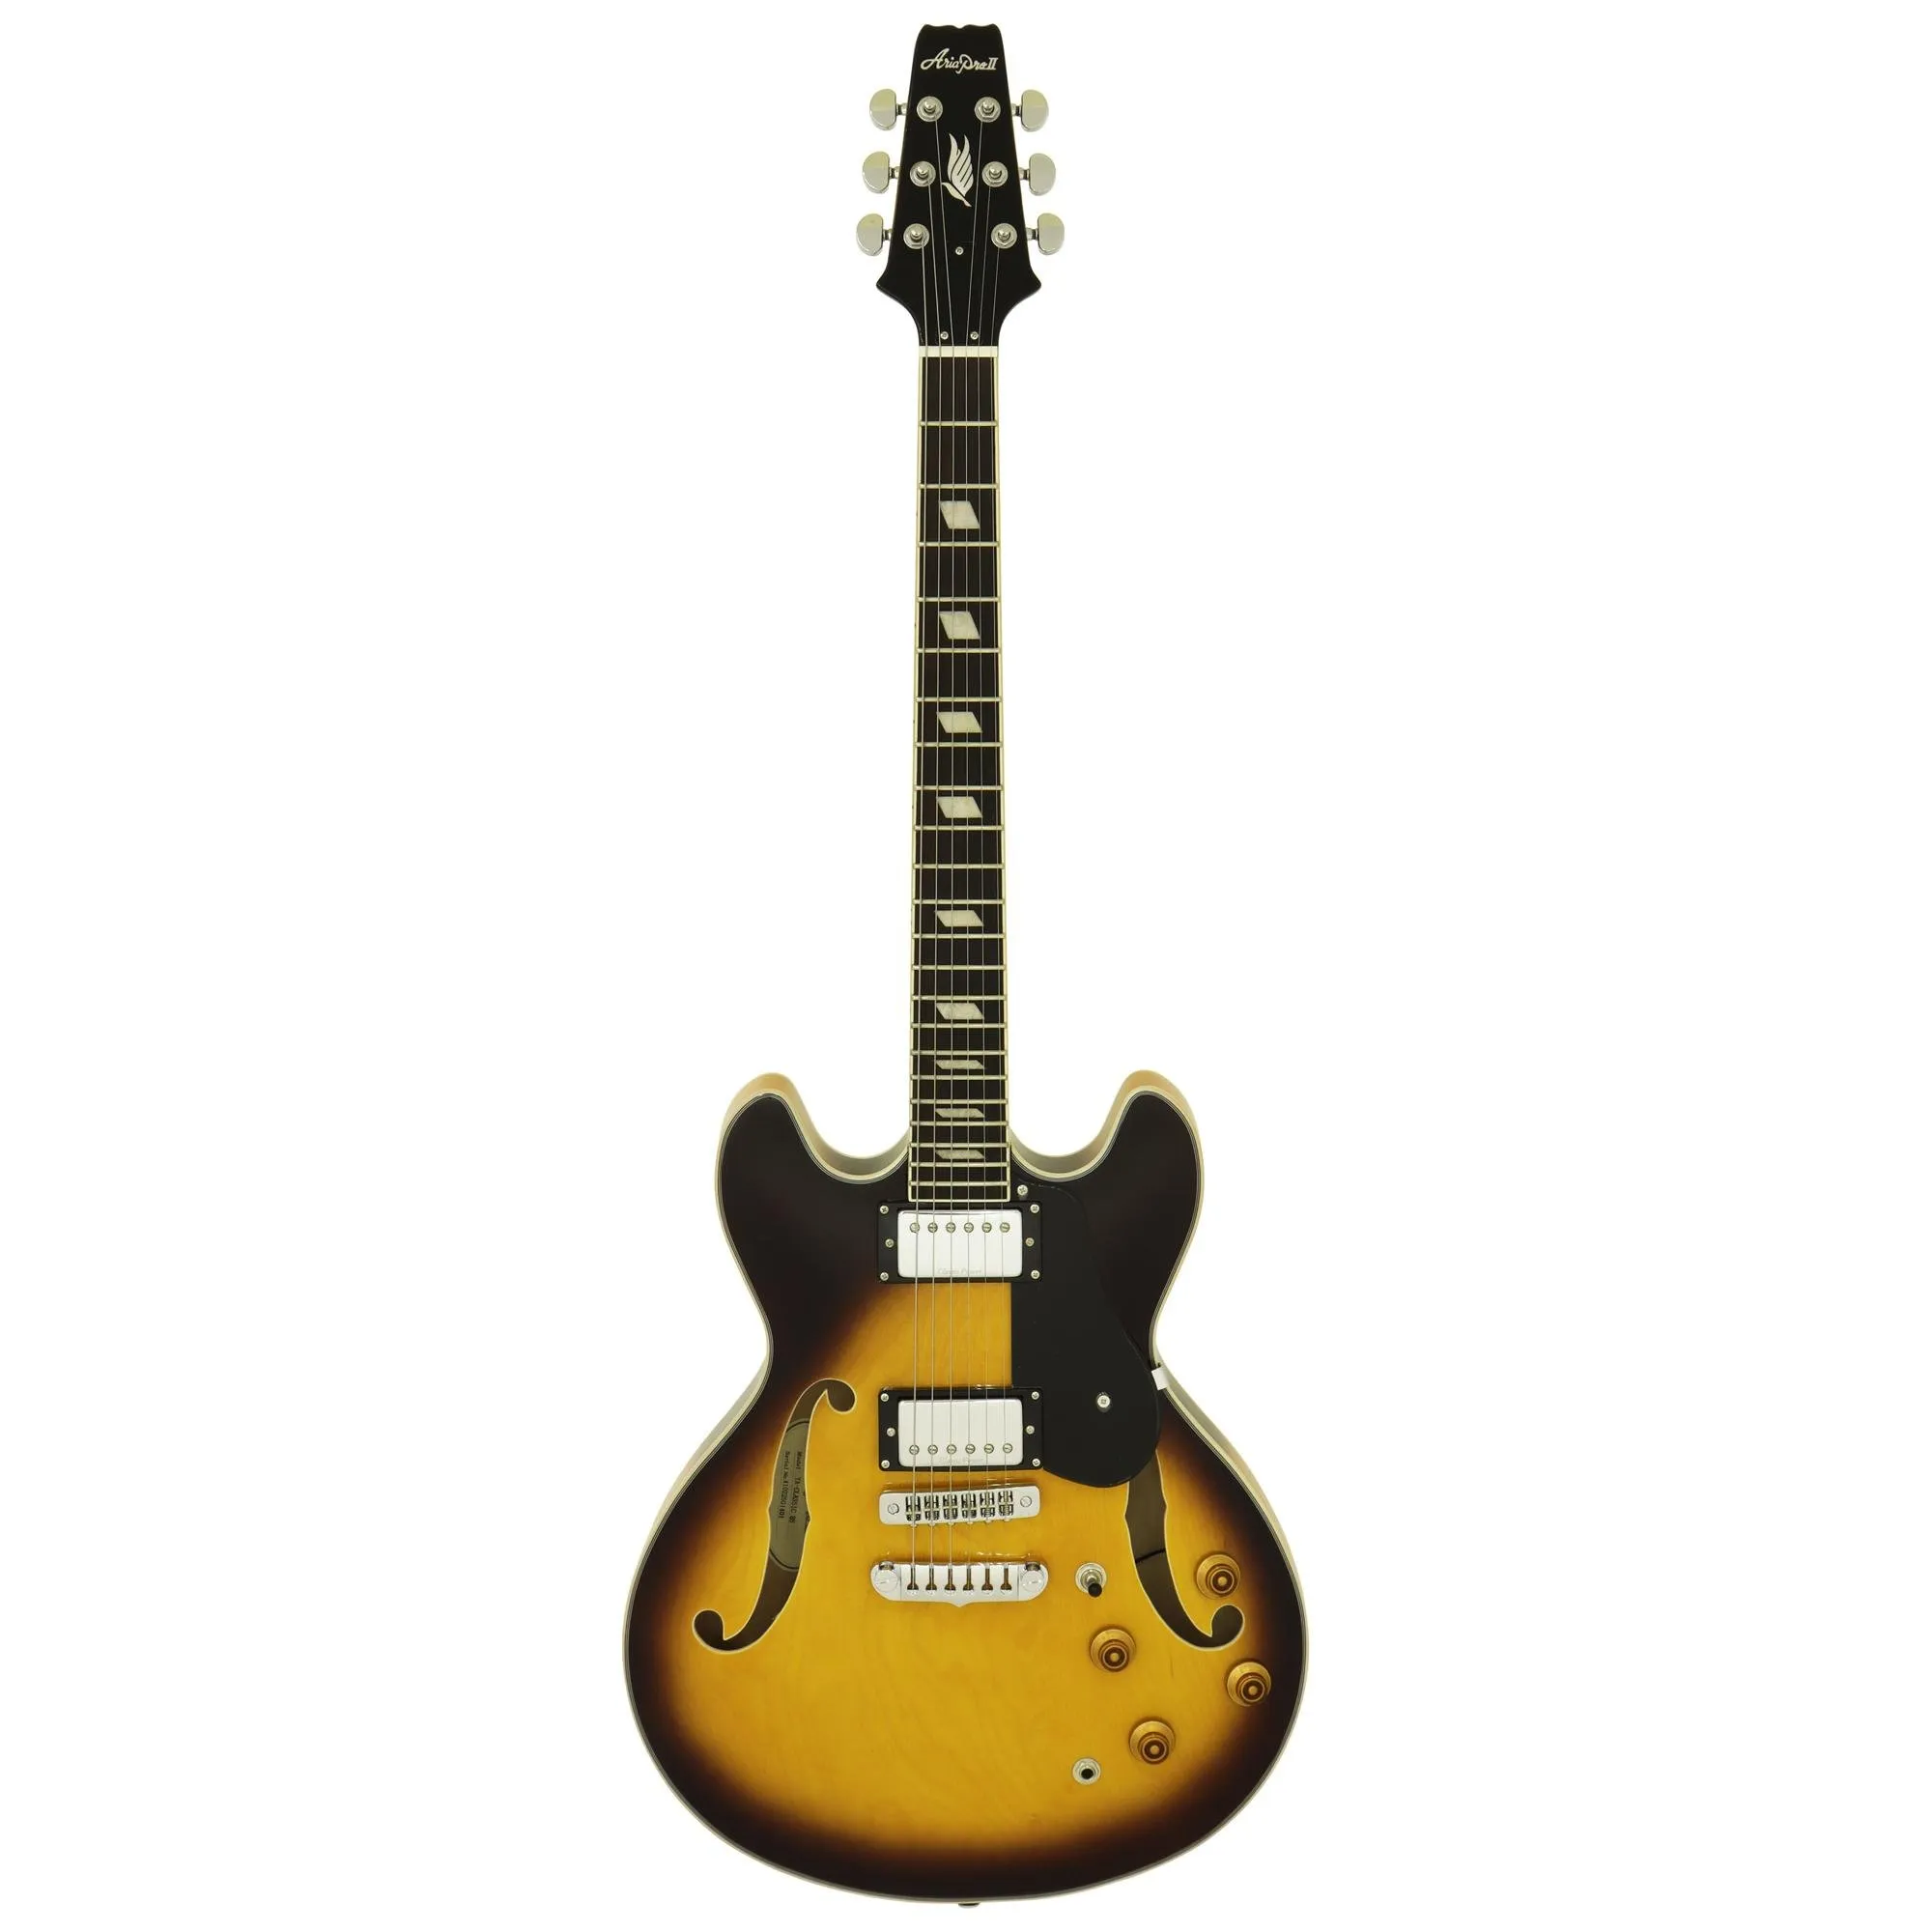 Guitarra Aria Pro II TA-CLASSIC Brown Burst por 3.999,99 à vista no boleto/pix ou parcele em até 12x sem juros. Compre na loja Mundomax!